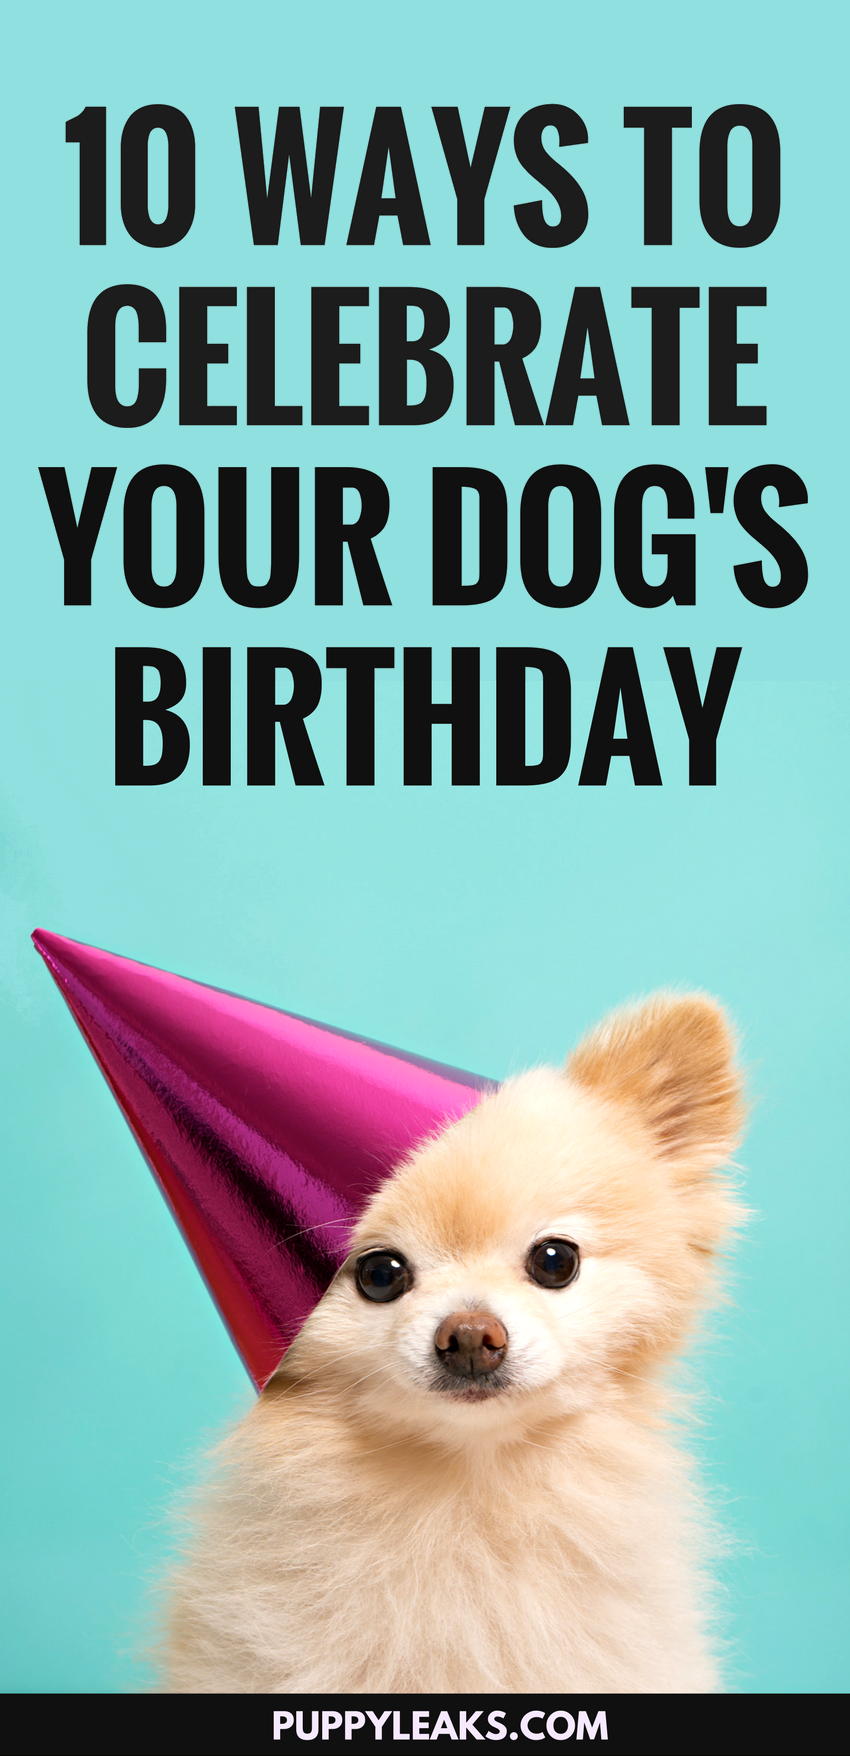 10 забавных способов отпраздновать день рождения вашей собаки